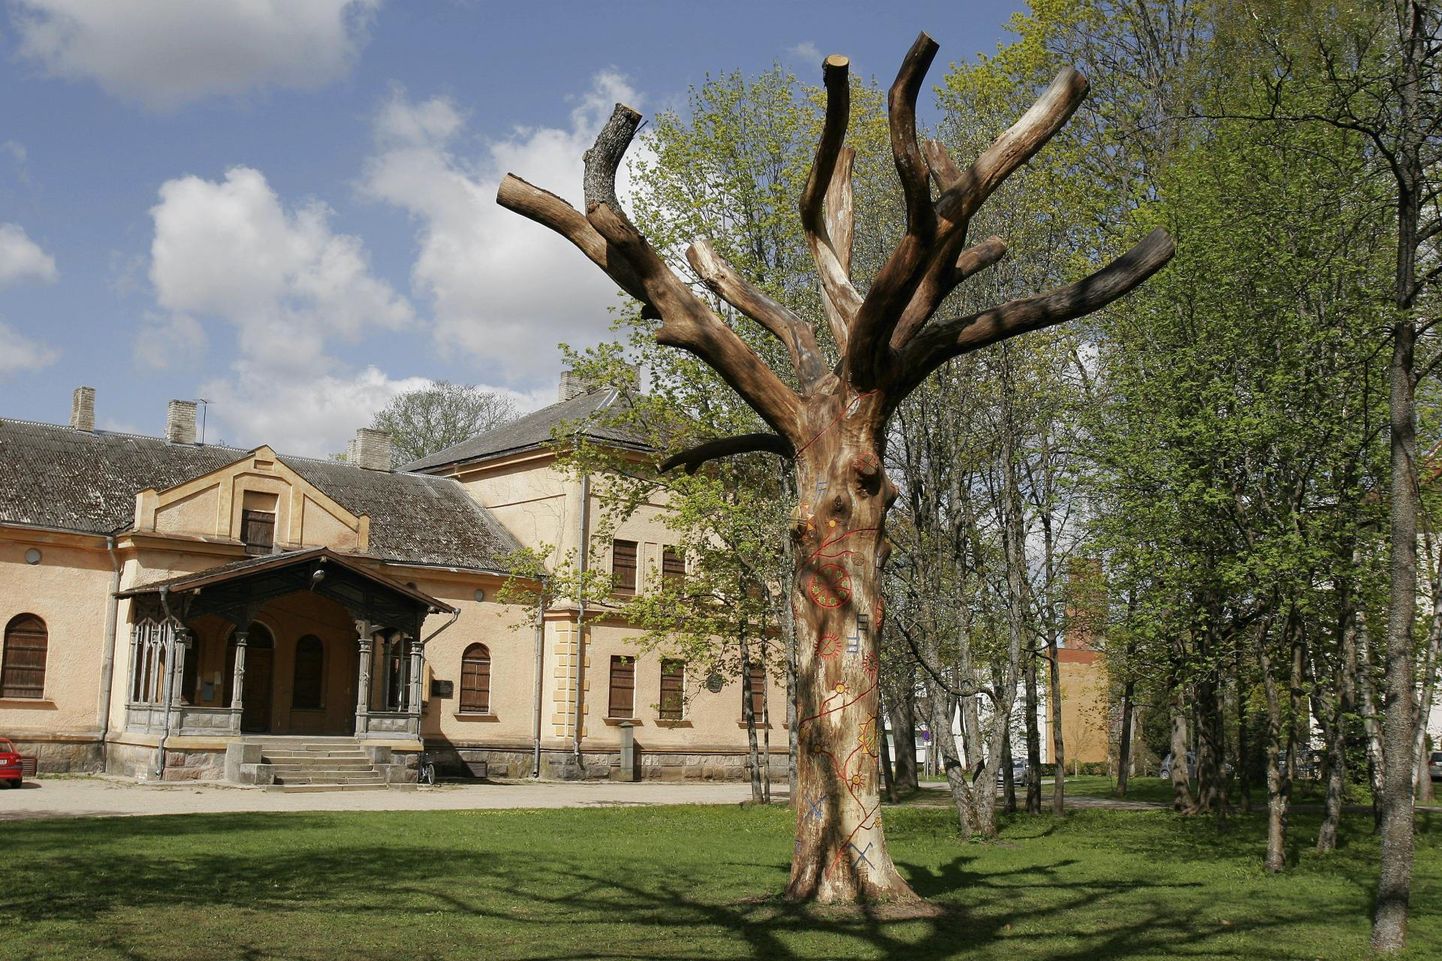 Poliitik Helmut Hallemaa arvates tuleks Ilmapuuks kujundatud vana ja kuivanud tamm mõisapargist maha võtta ning selle asemele istutada tema kingitud tammepuu. See foto Ilmapuust on tehtud üheksa aastat tagasi, mil puu selliseks kujundati.